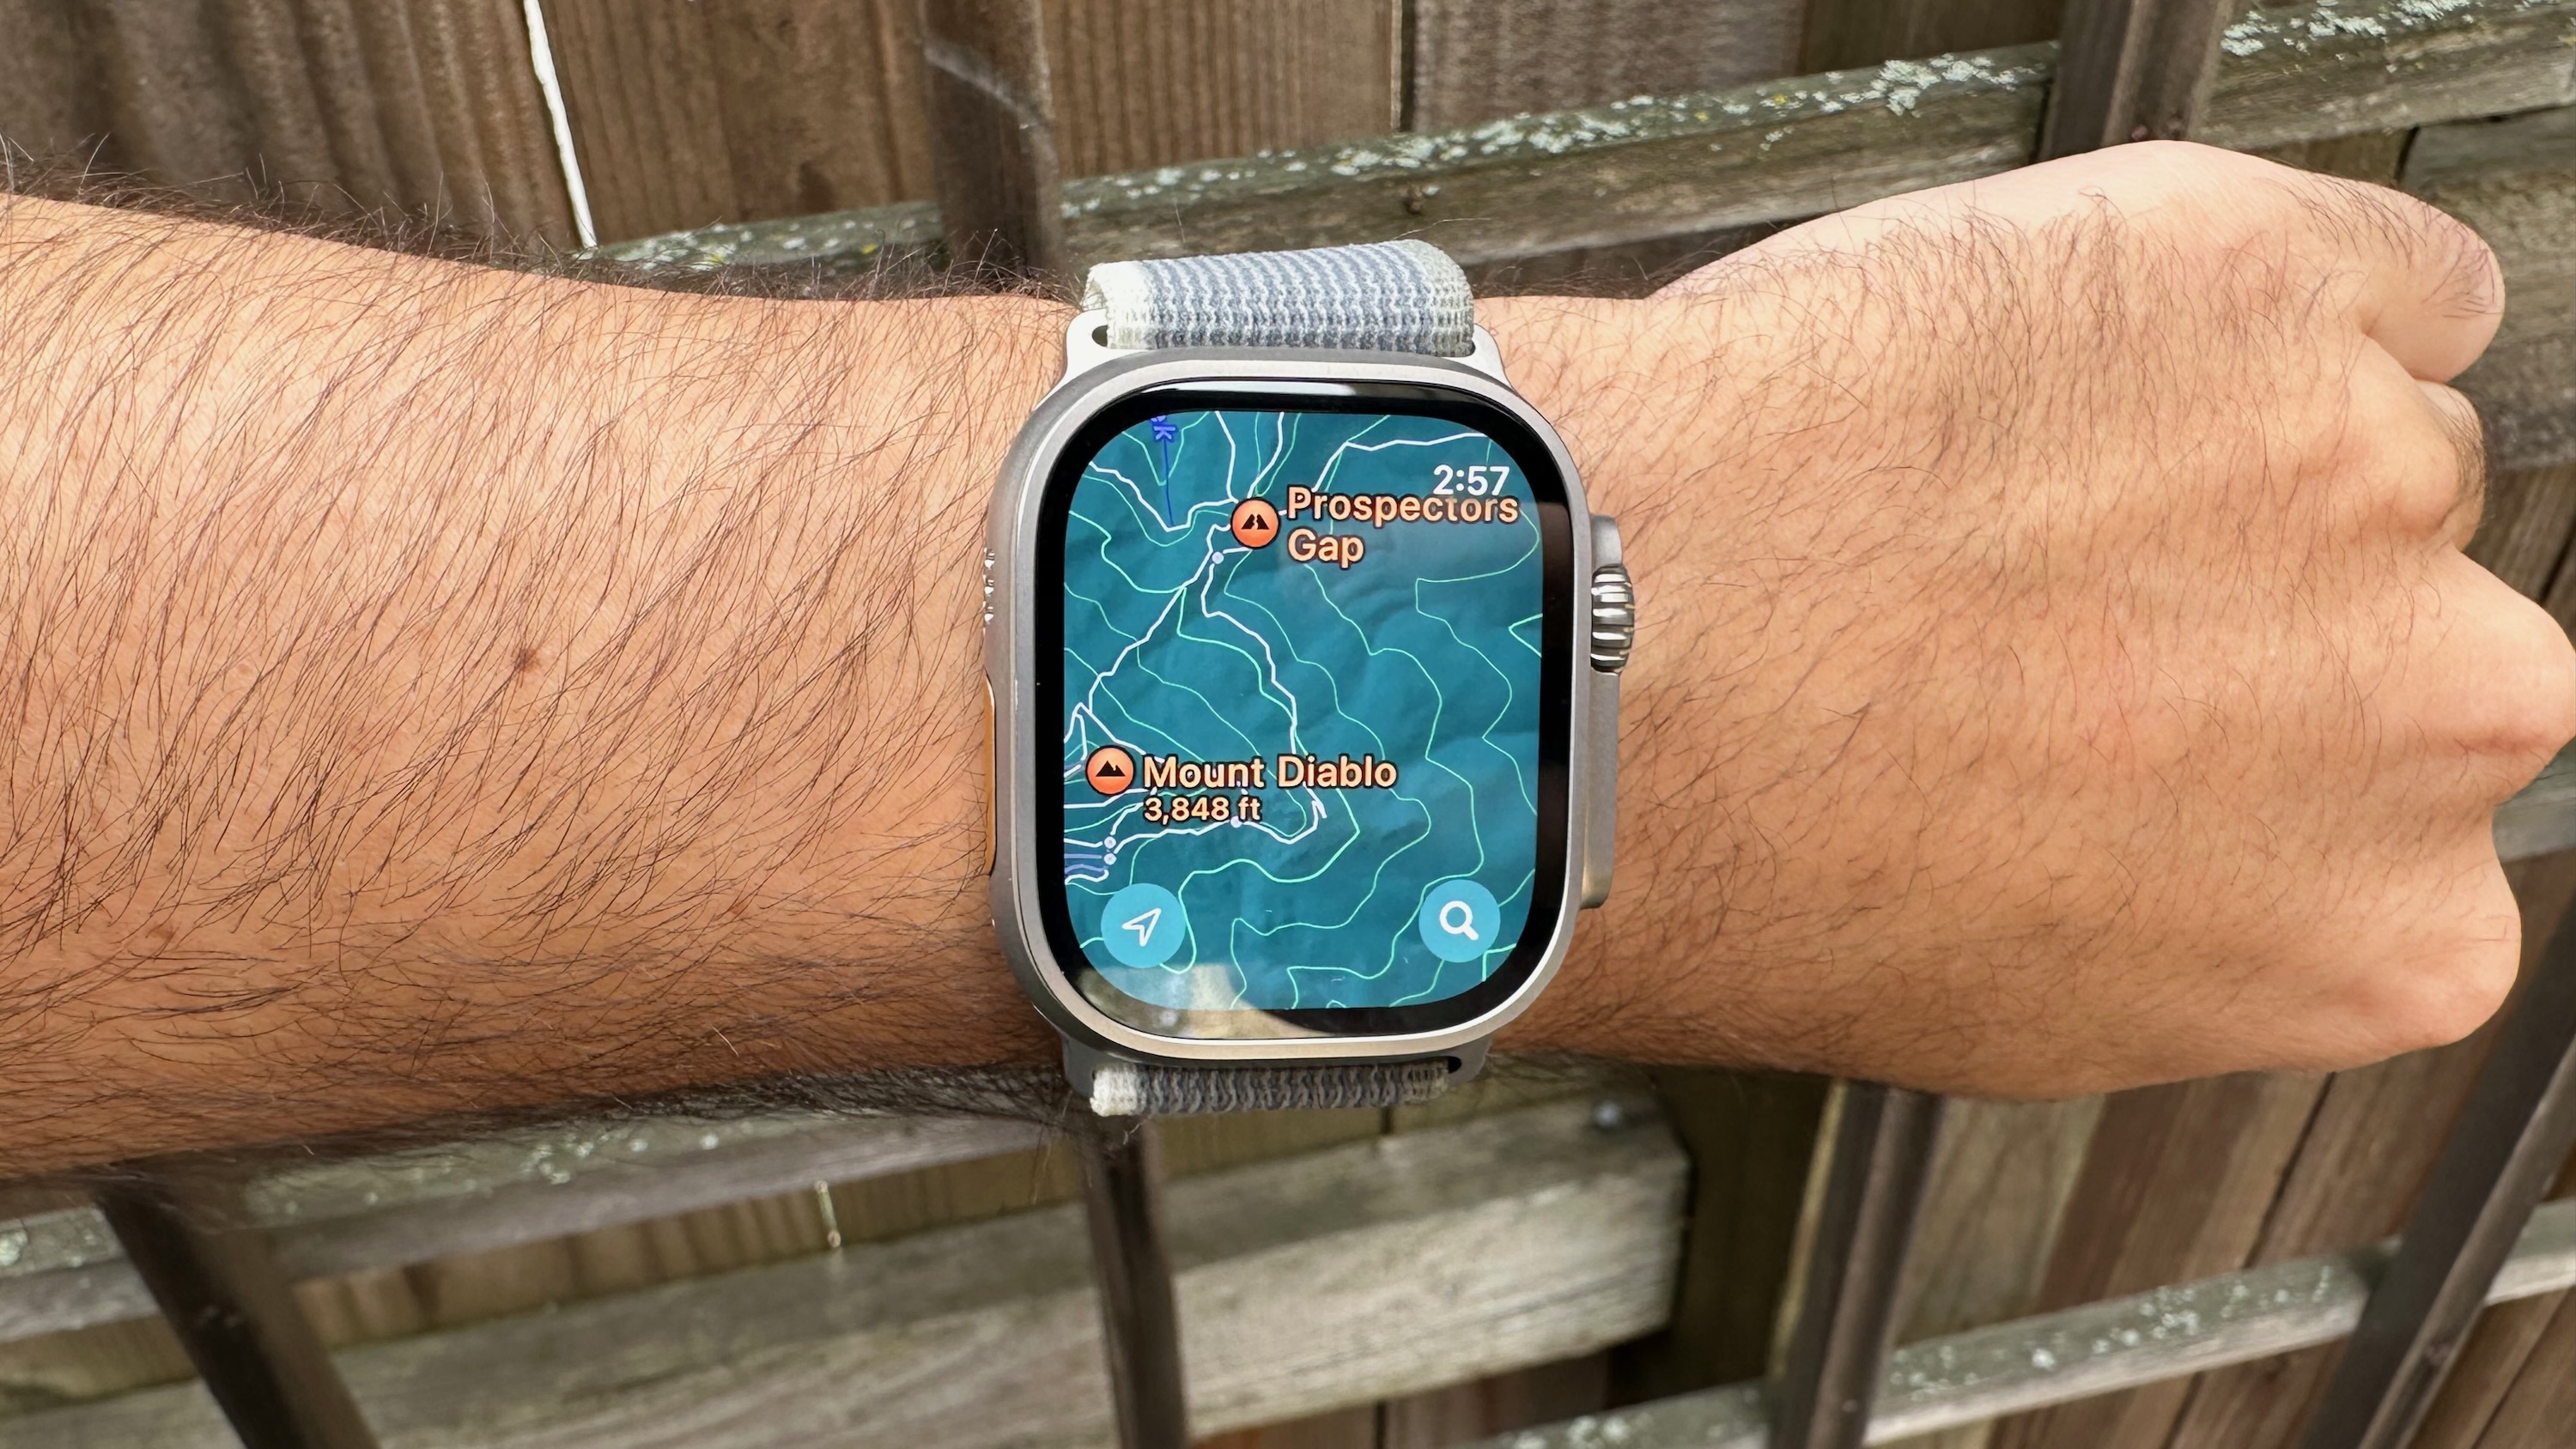 Apple Maps view of Mount Diablo on the Apple Watch Ultra 2